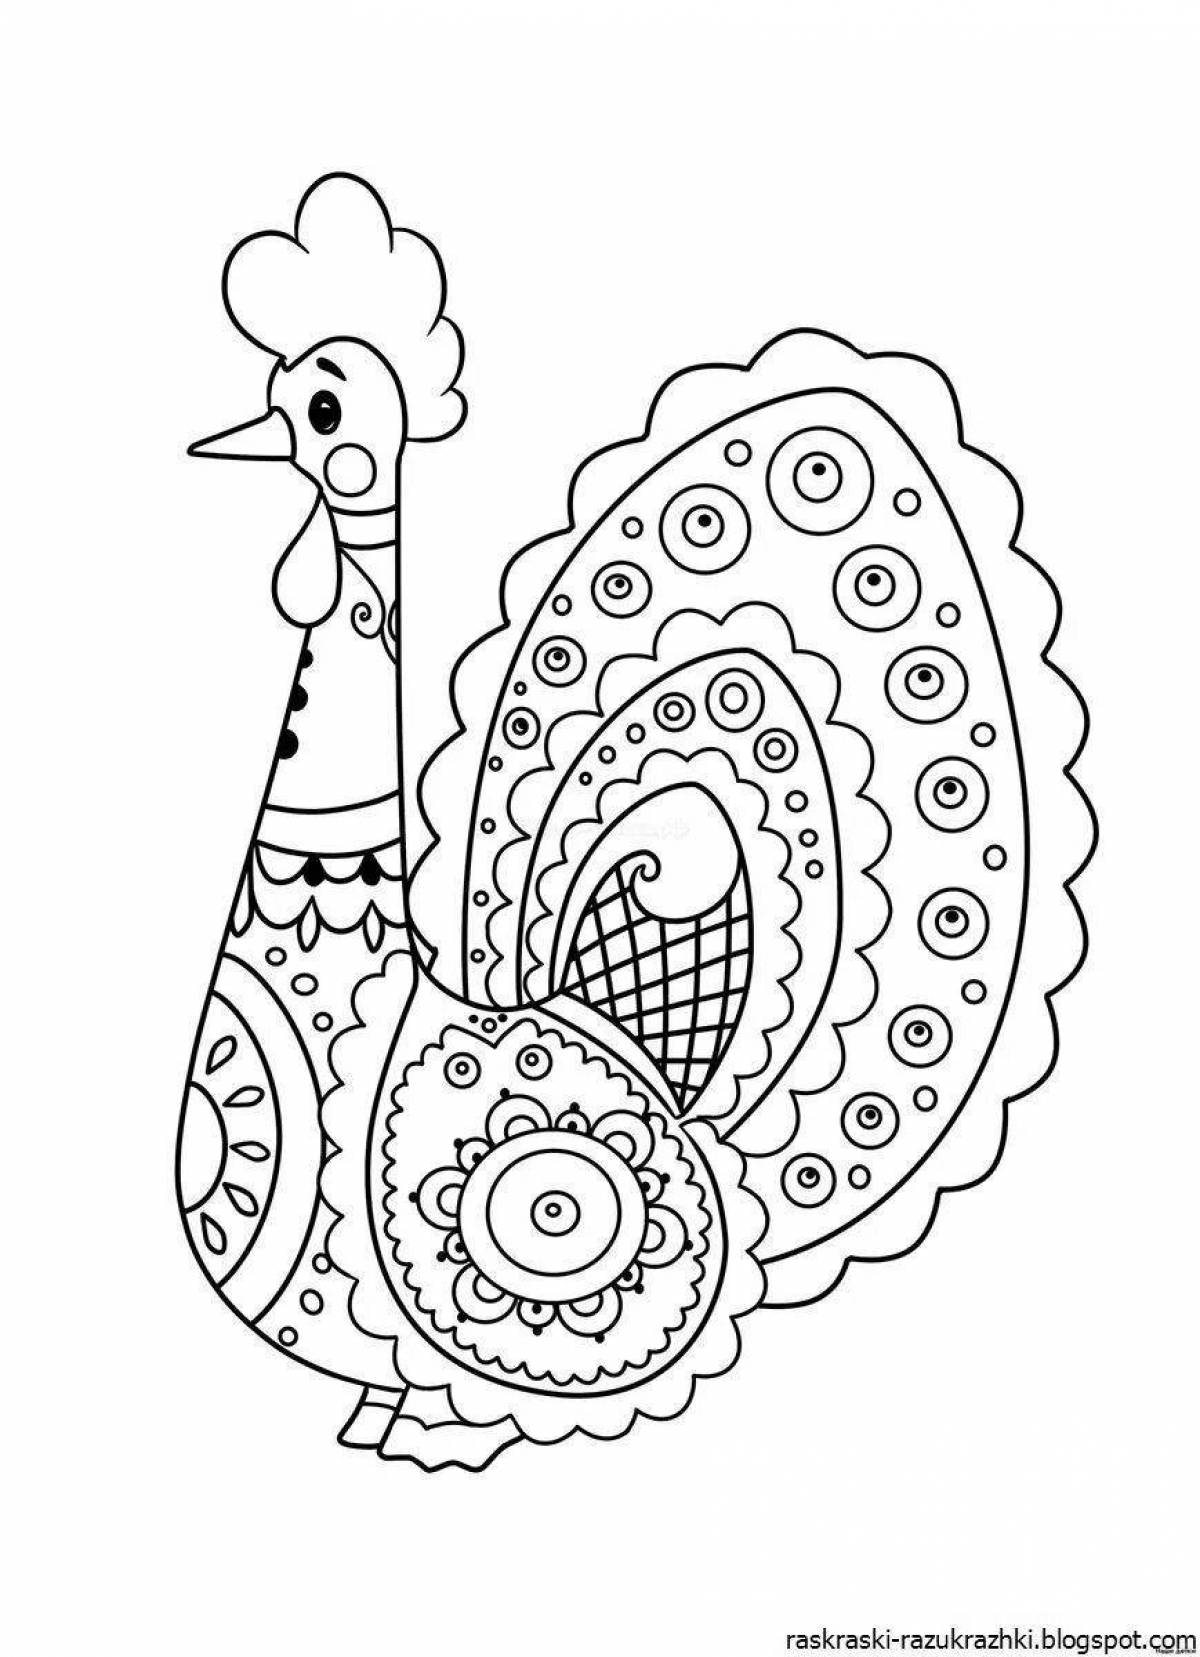 Раскраска очаровательный дымковский петух для дошкольников